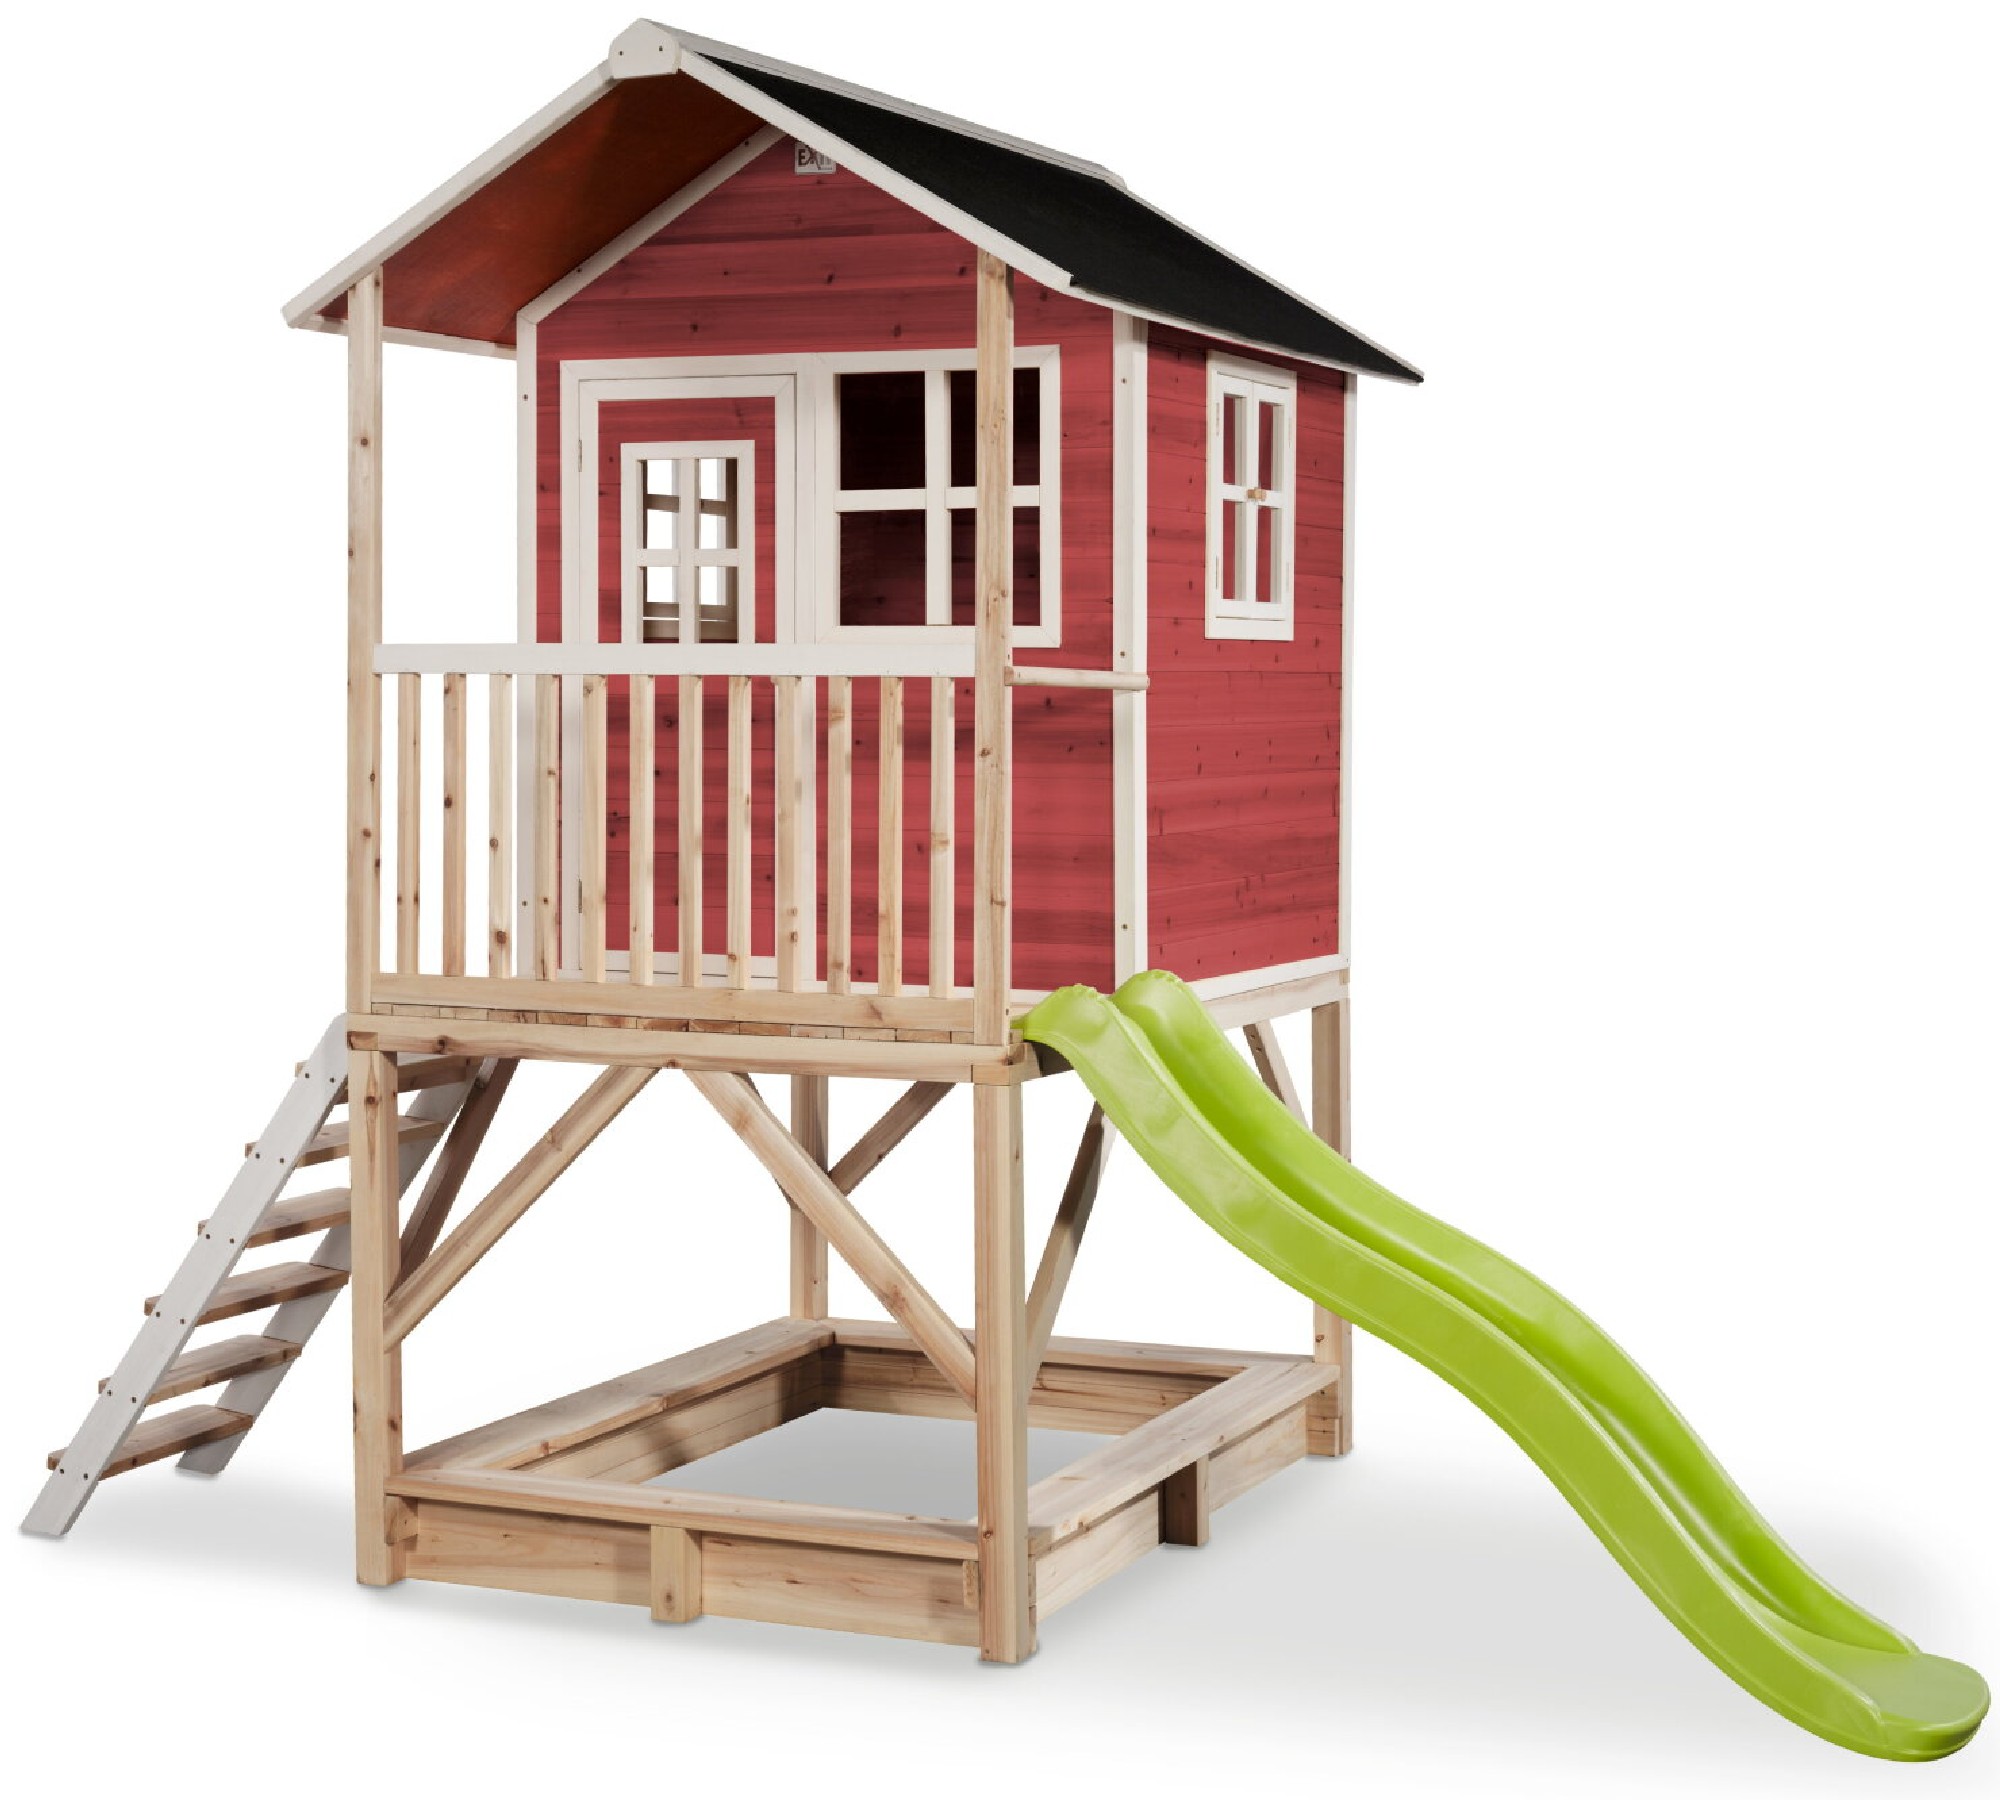 Drewniany domek ogrodowy dla dzieci Loft 500 (schodki, zjedalnia, taras, piaskownica) - czerwony